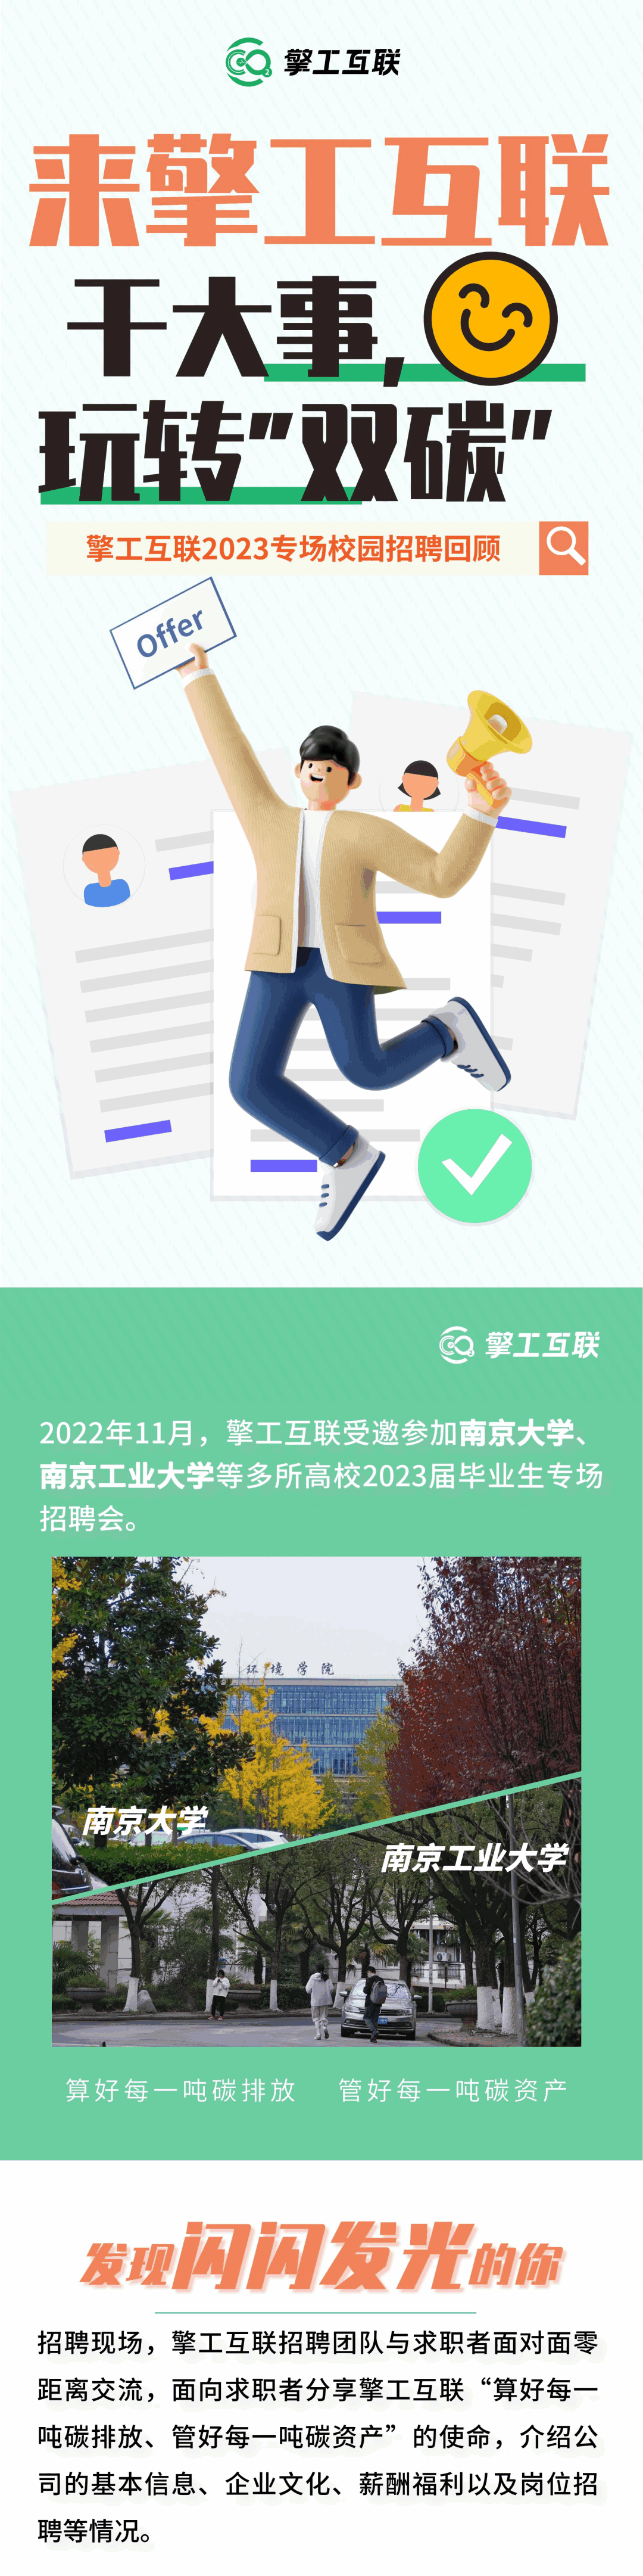 擎工互联2023南京大学秋季校园招聘